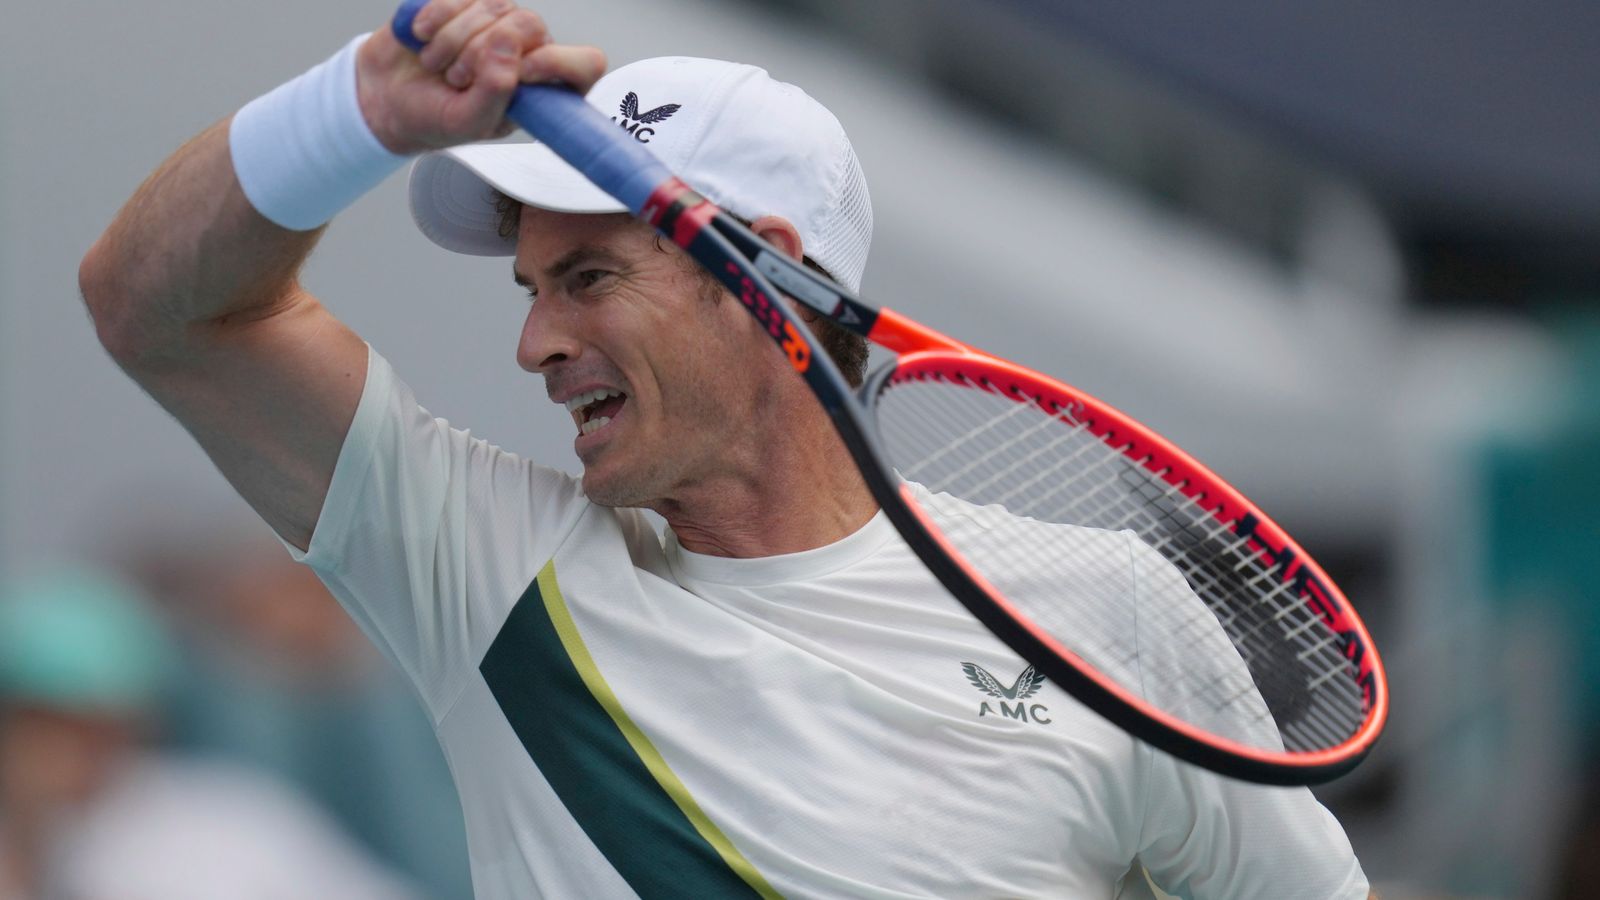 Andy Murray eliminado en la primera ronda del Abierto de Miami después de la derrota en dos sets ante Dusan Lajovic |  Noticias de tenis